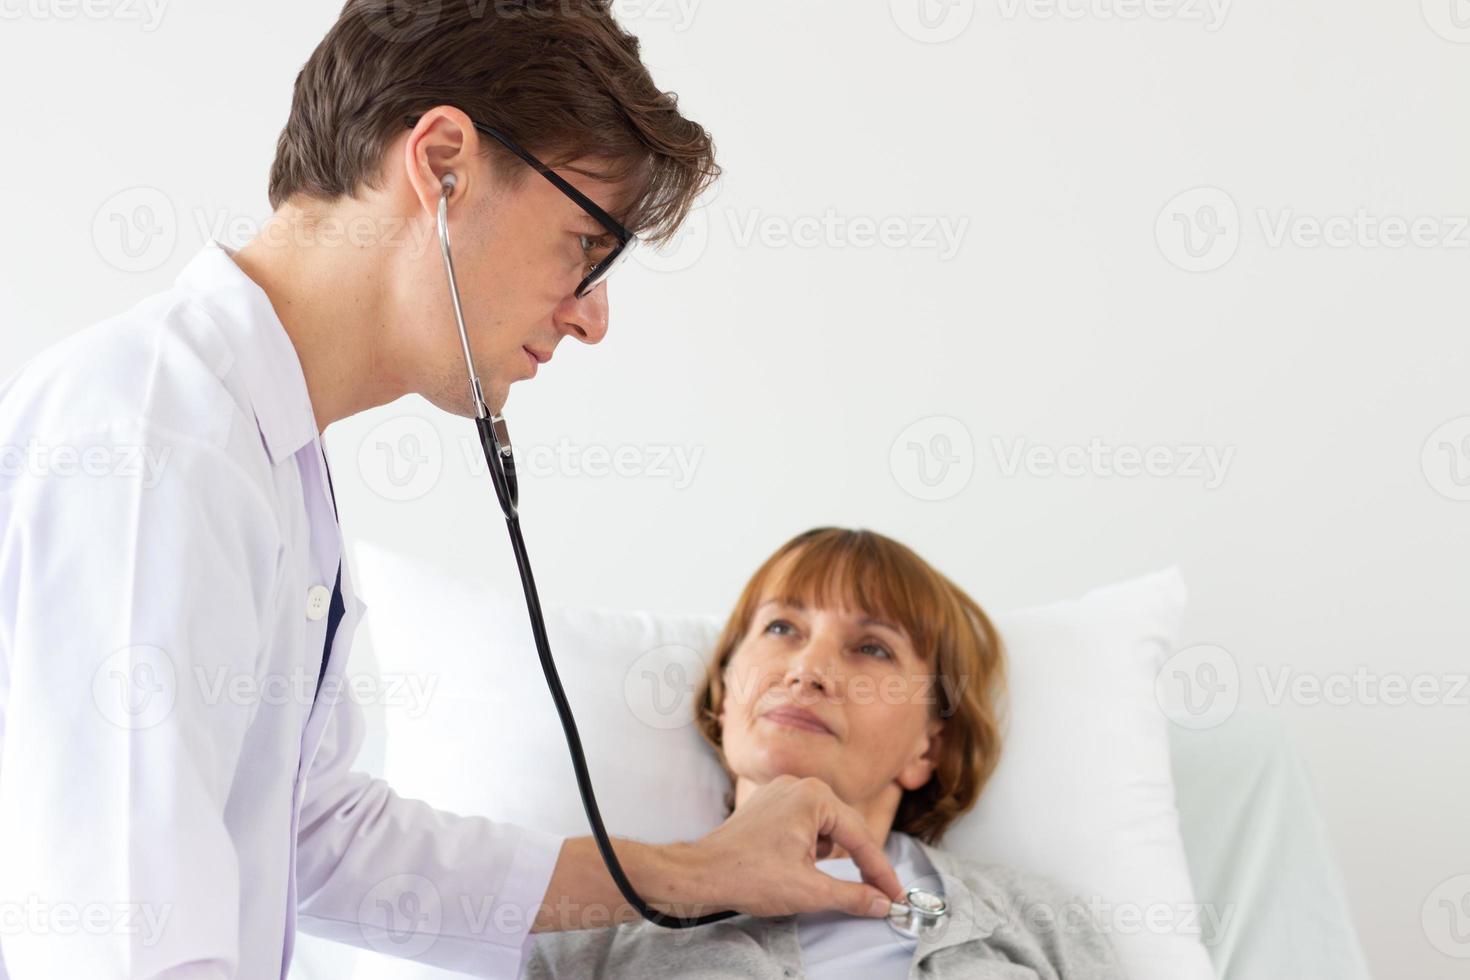 el médico está examinando al paciente en el hospital. médico varón blanco examinando a una anciana paciente blanca. foto